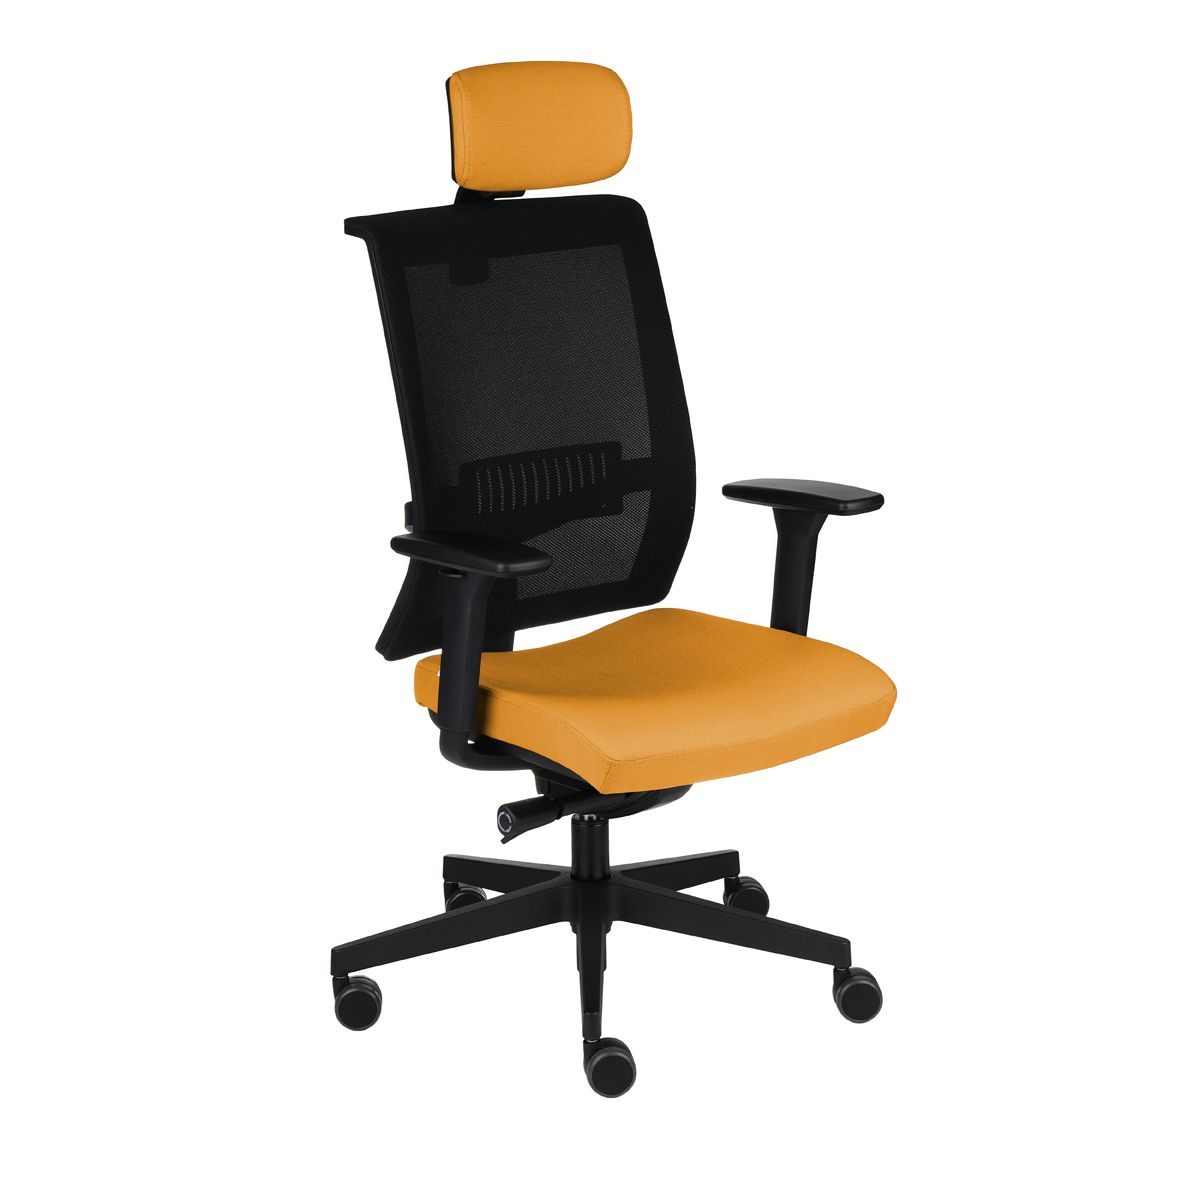 Kancelárska stolička s podrúčkami Libon BS HD - žltá / čierna - nabbi.sk